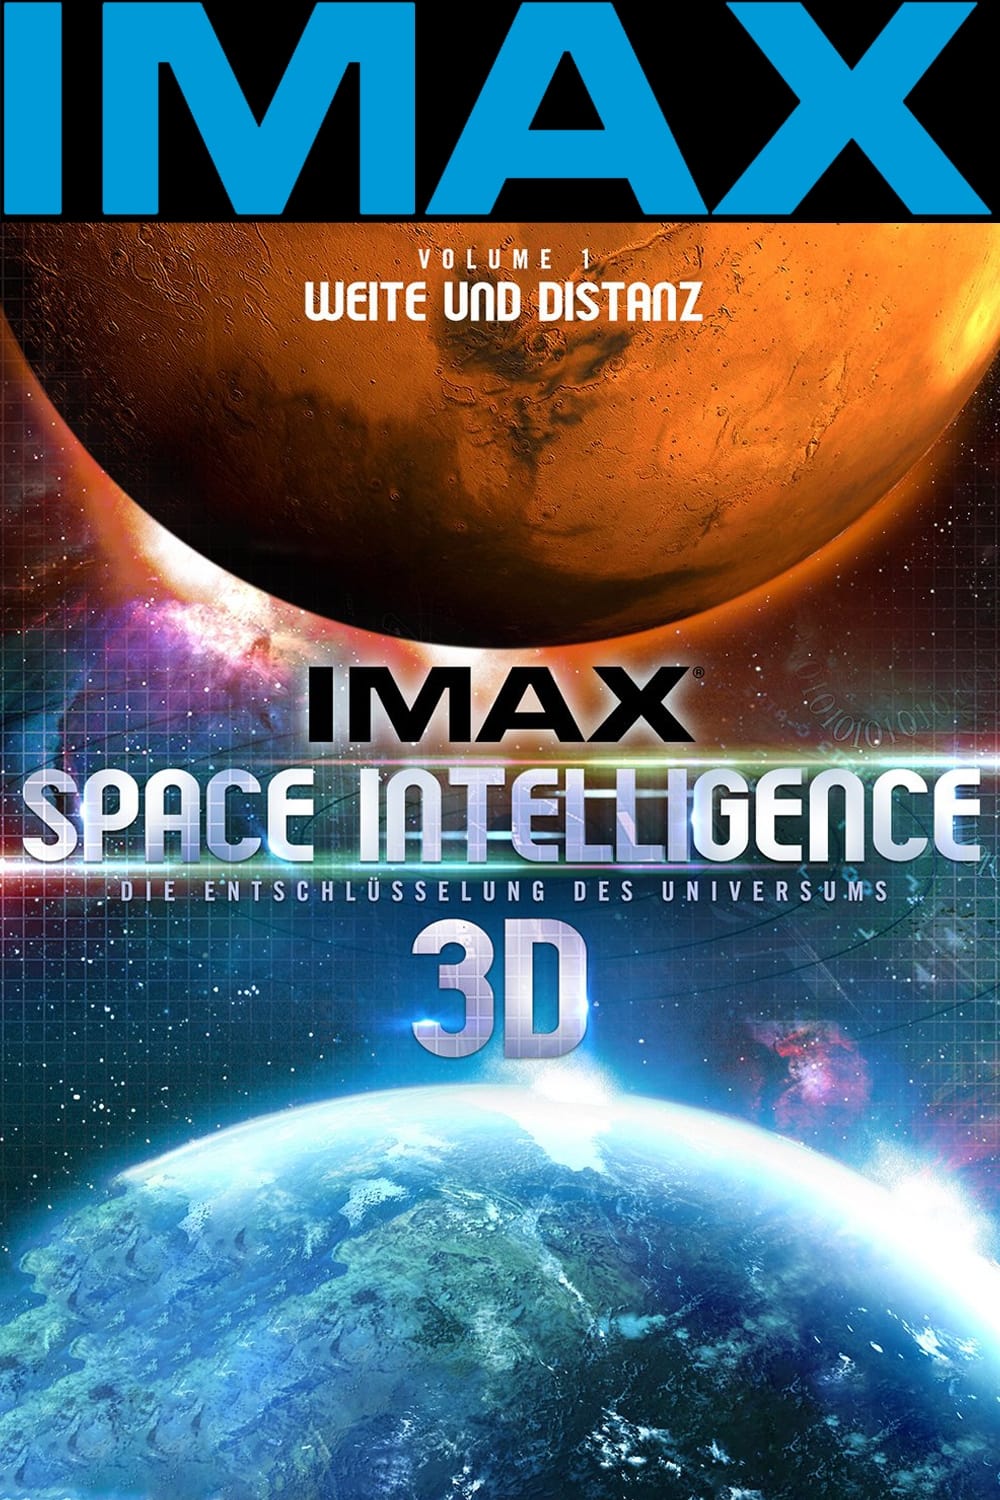 IMAX Space Intelligence 3D - Die Entschlüsselung des Universums - Vol. 1: Weite und Distanz